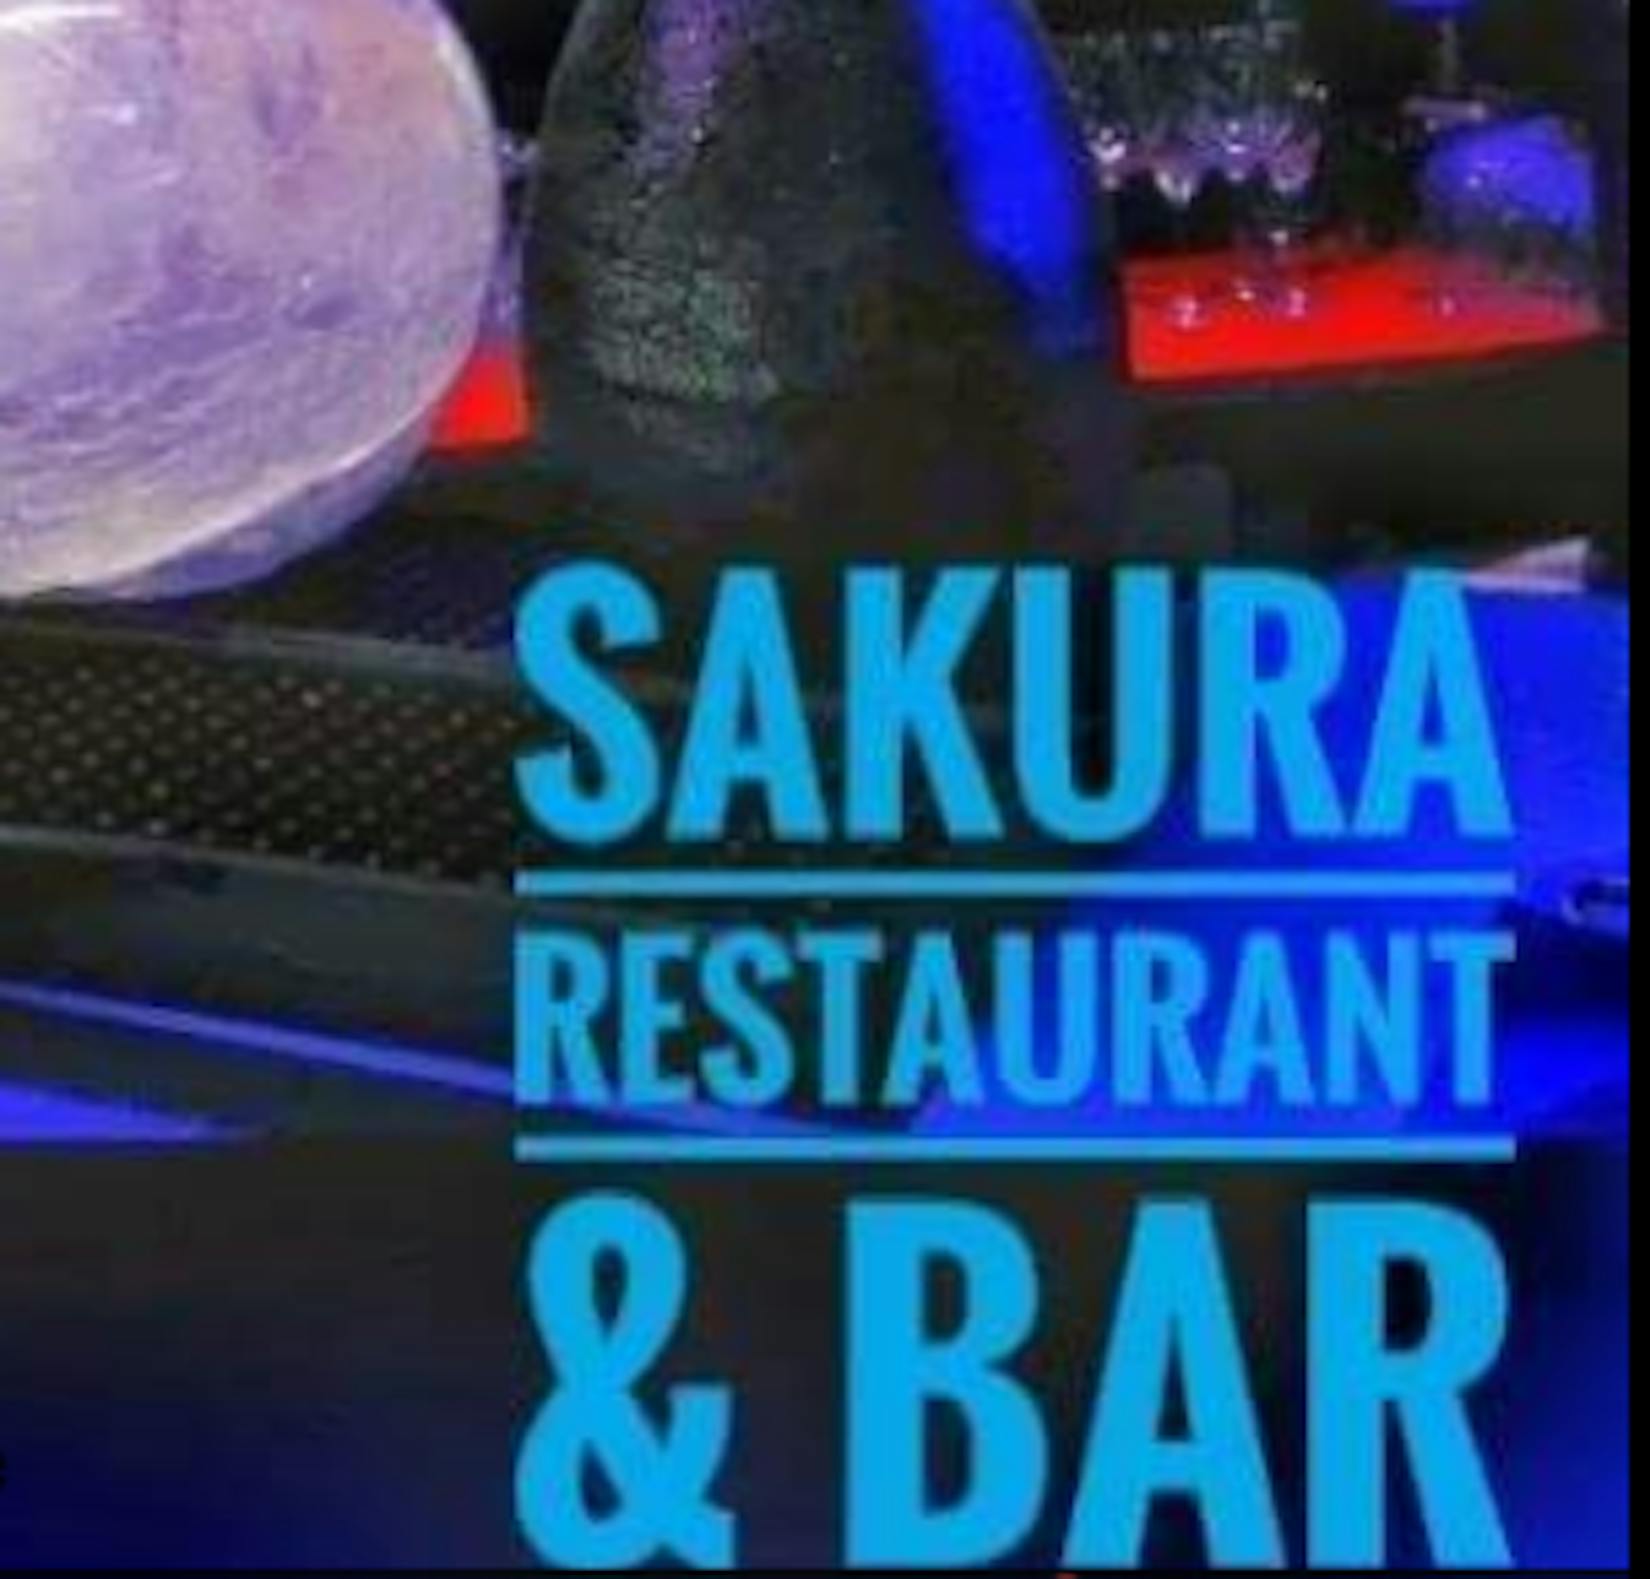 Sakura Restaurant & Bar | yathar